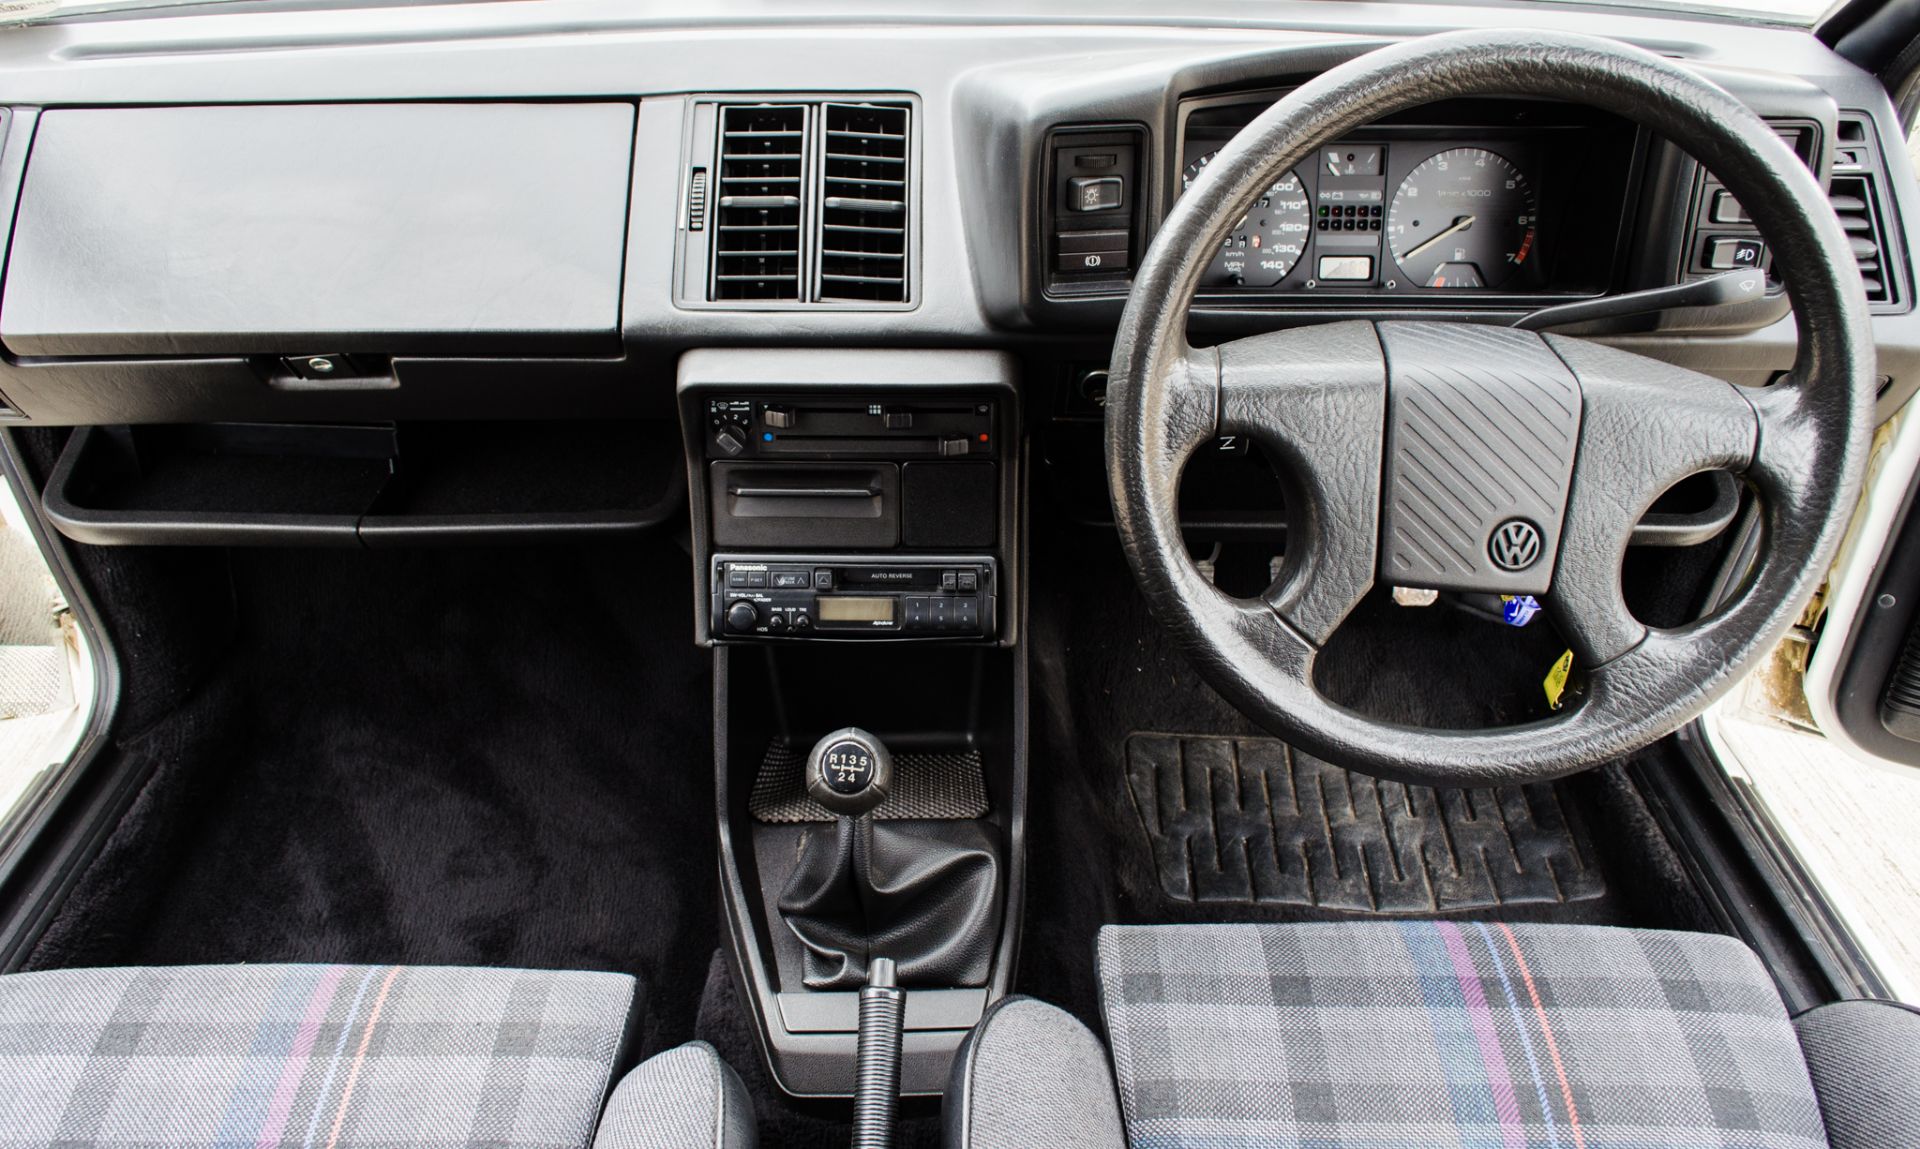 1991 Volkswagen Scirocco GTII 1800cc 3 door coupe - Image 35 of 46